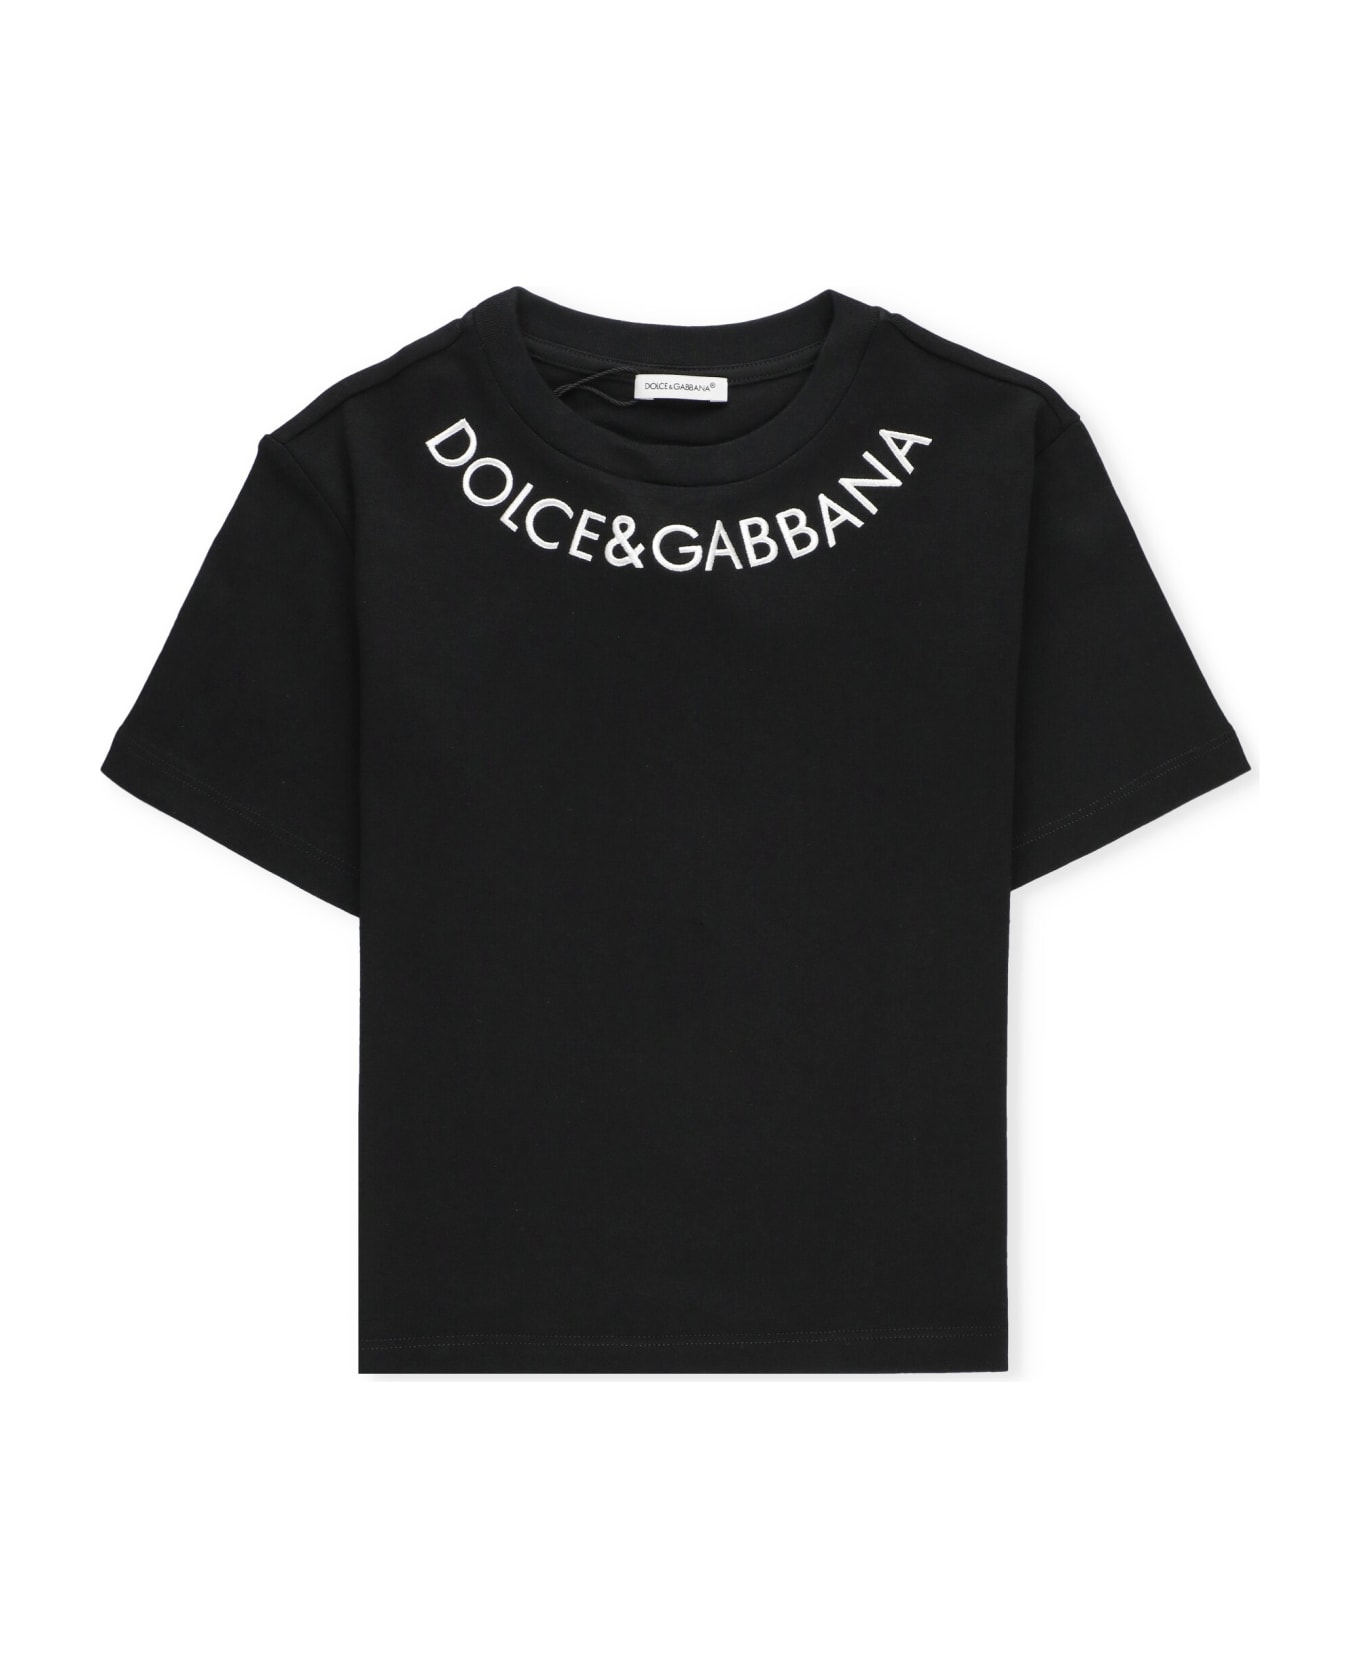 Dolce & Gabbana T-shirt With Logo - Black